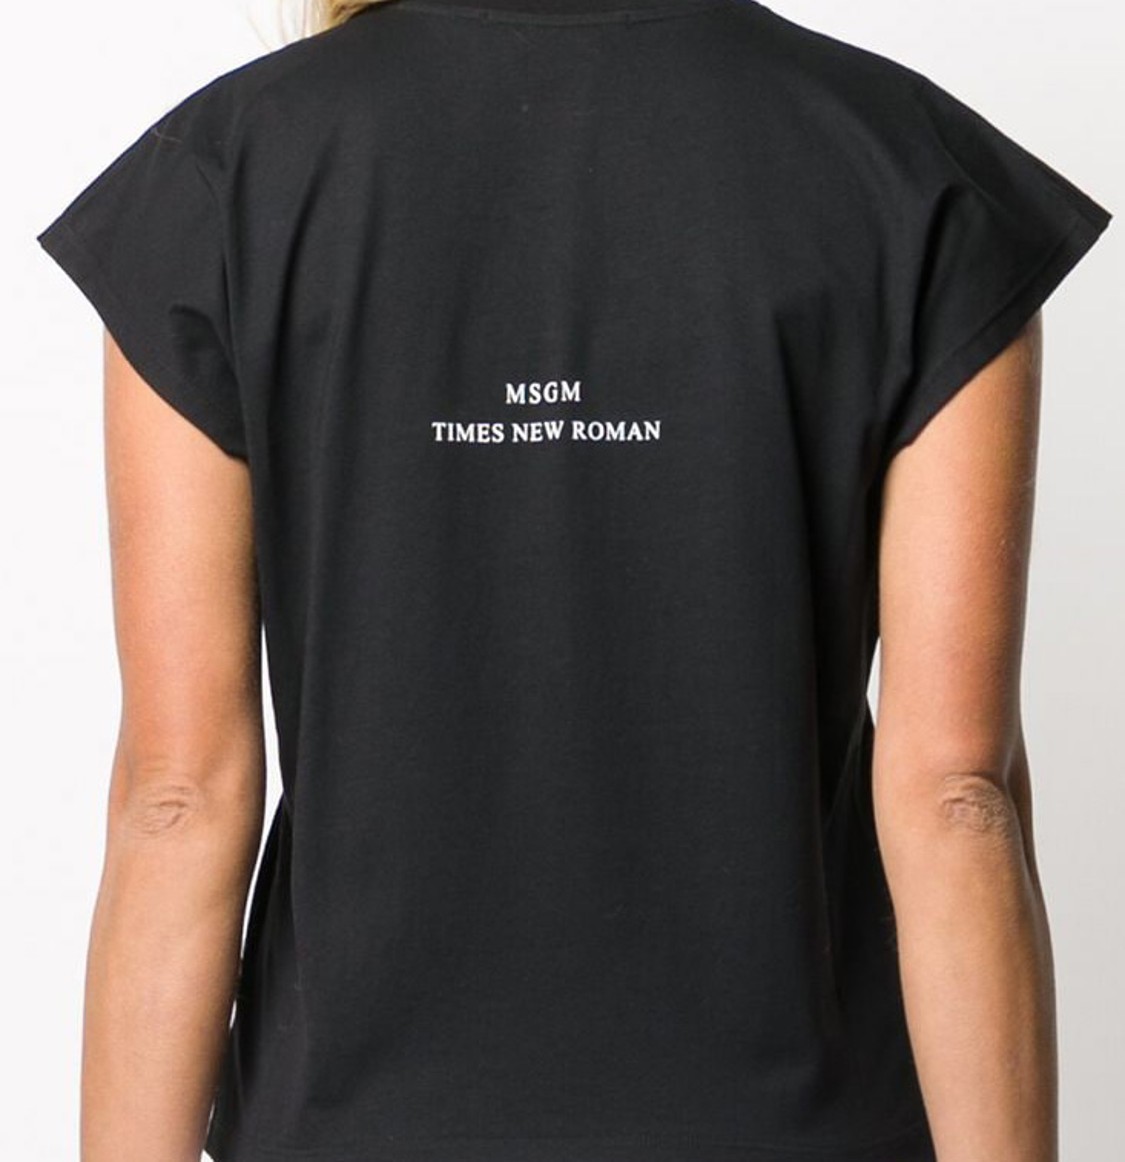 shop MSGM Sales T-shirts: T-shirt MSGM, stampa davanti, maniche corte, girocollo, scritta e logo dietro, fit regolare.

Composizione: 100% cotone. number 1627